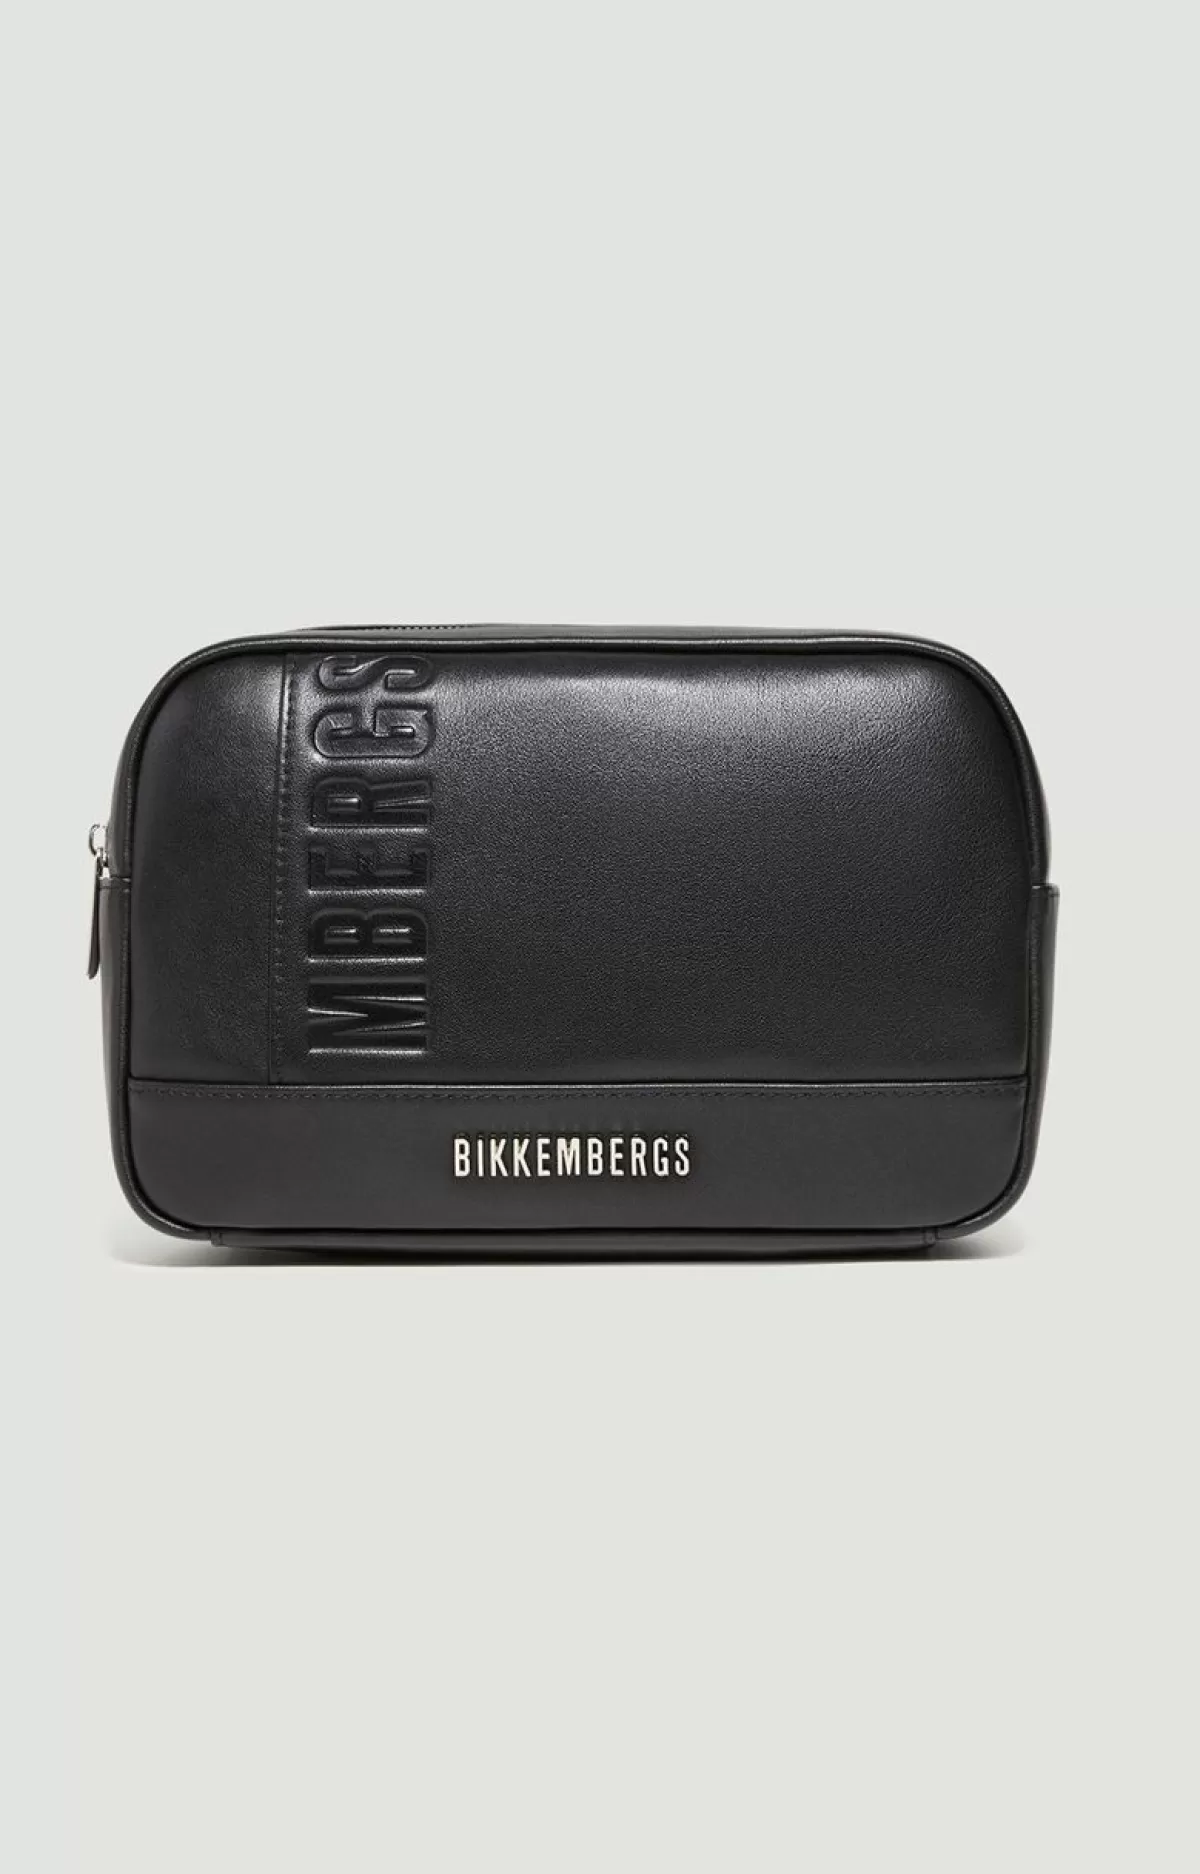 Bikkembergs Men'S Leather Toiletry Bag - Jonas Black New